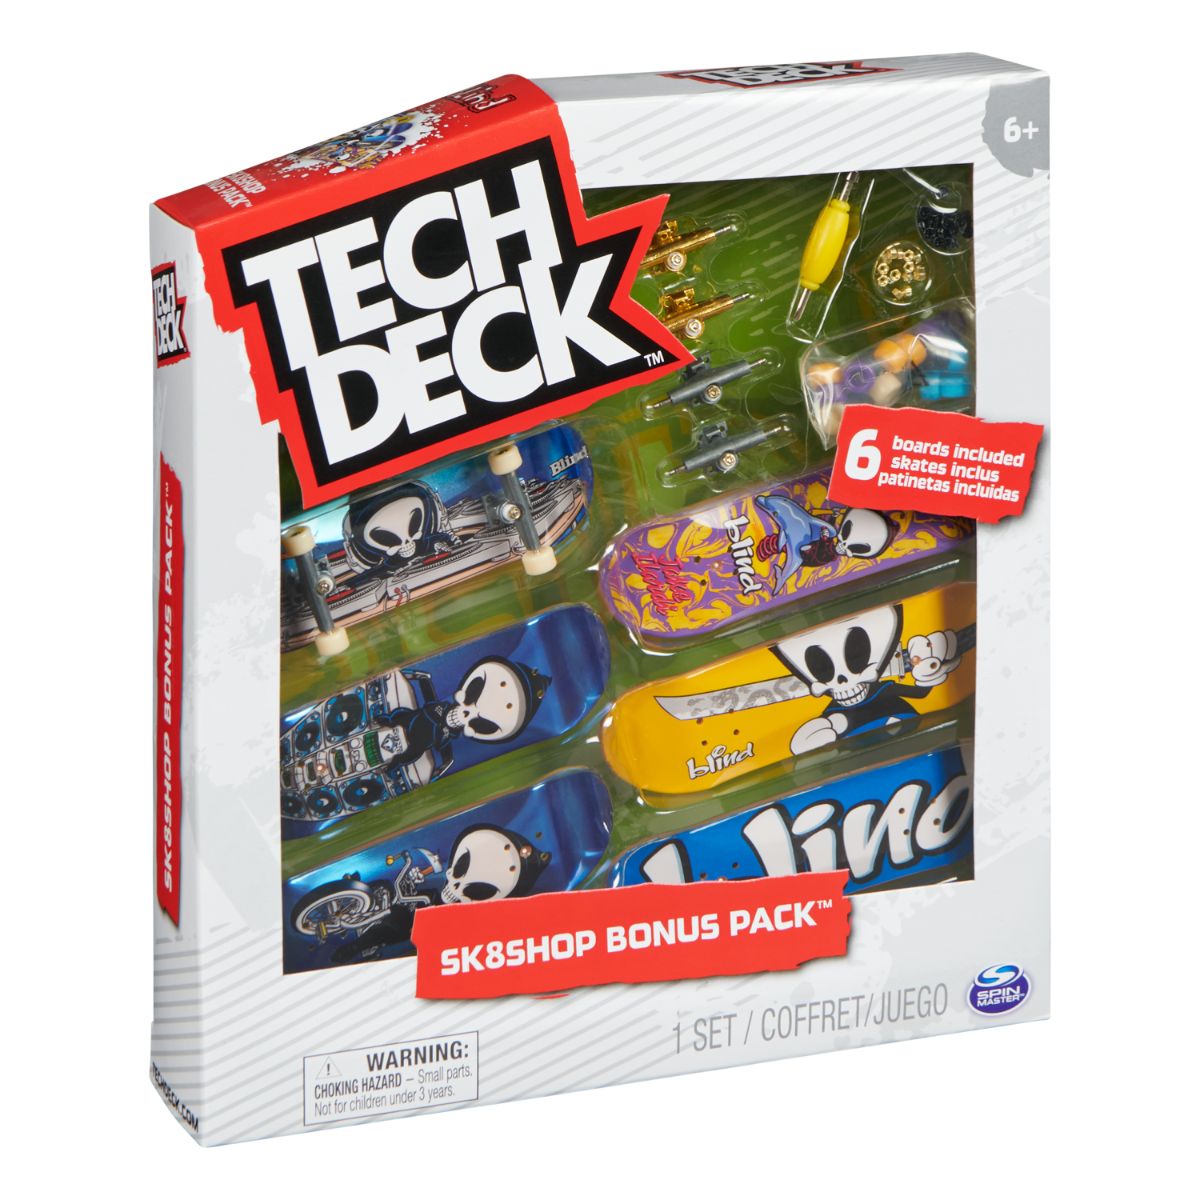 Set 6 mini placi skateboard, Tech Deck, Bonus Pack 20136703